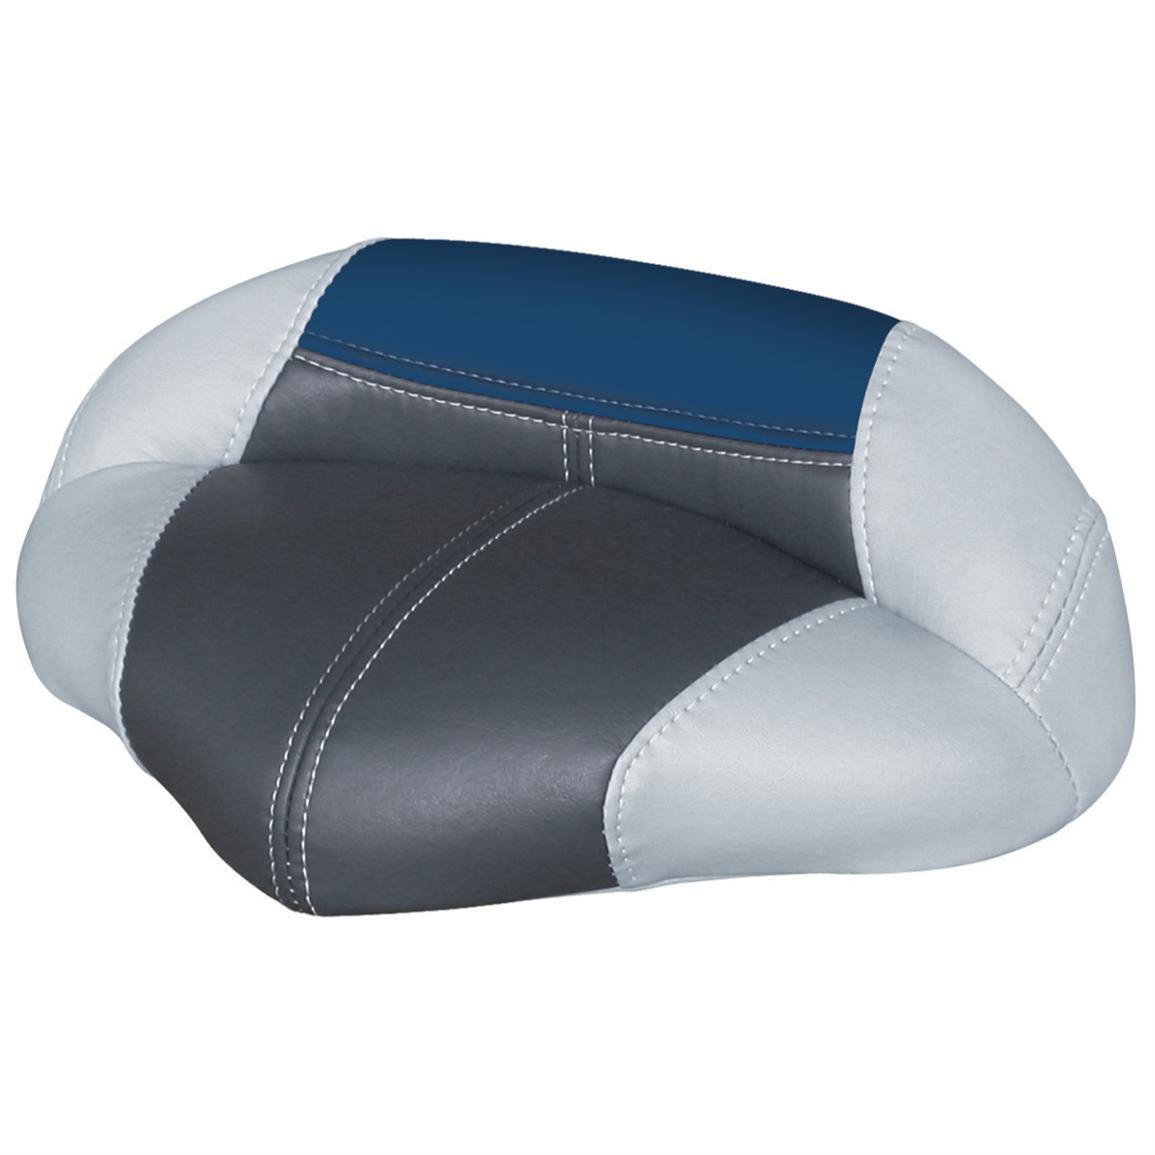 Wise® Blast-Off Series Traditional Pro Seat, Grey / Charcoal / Blue